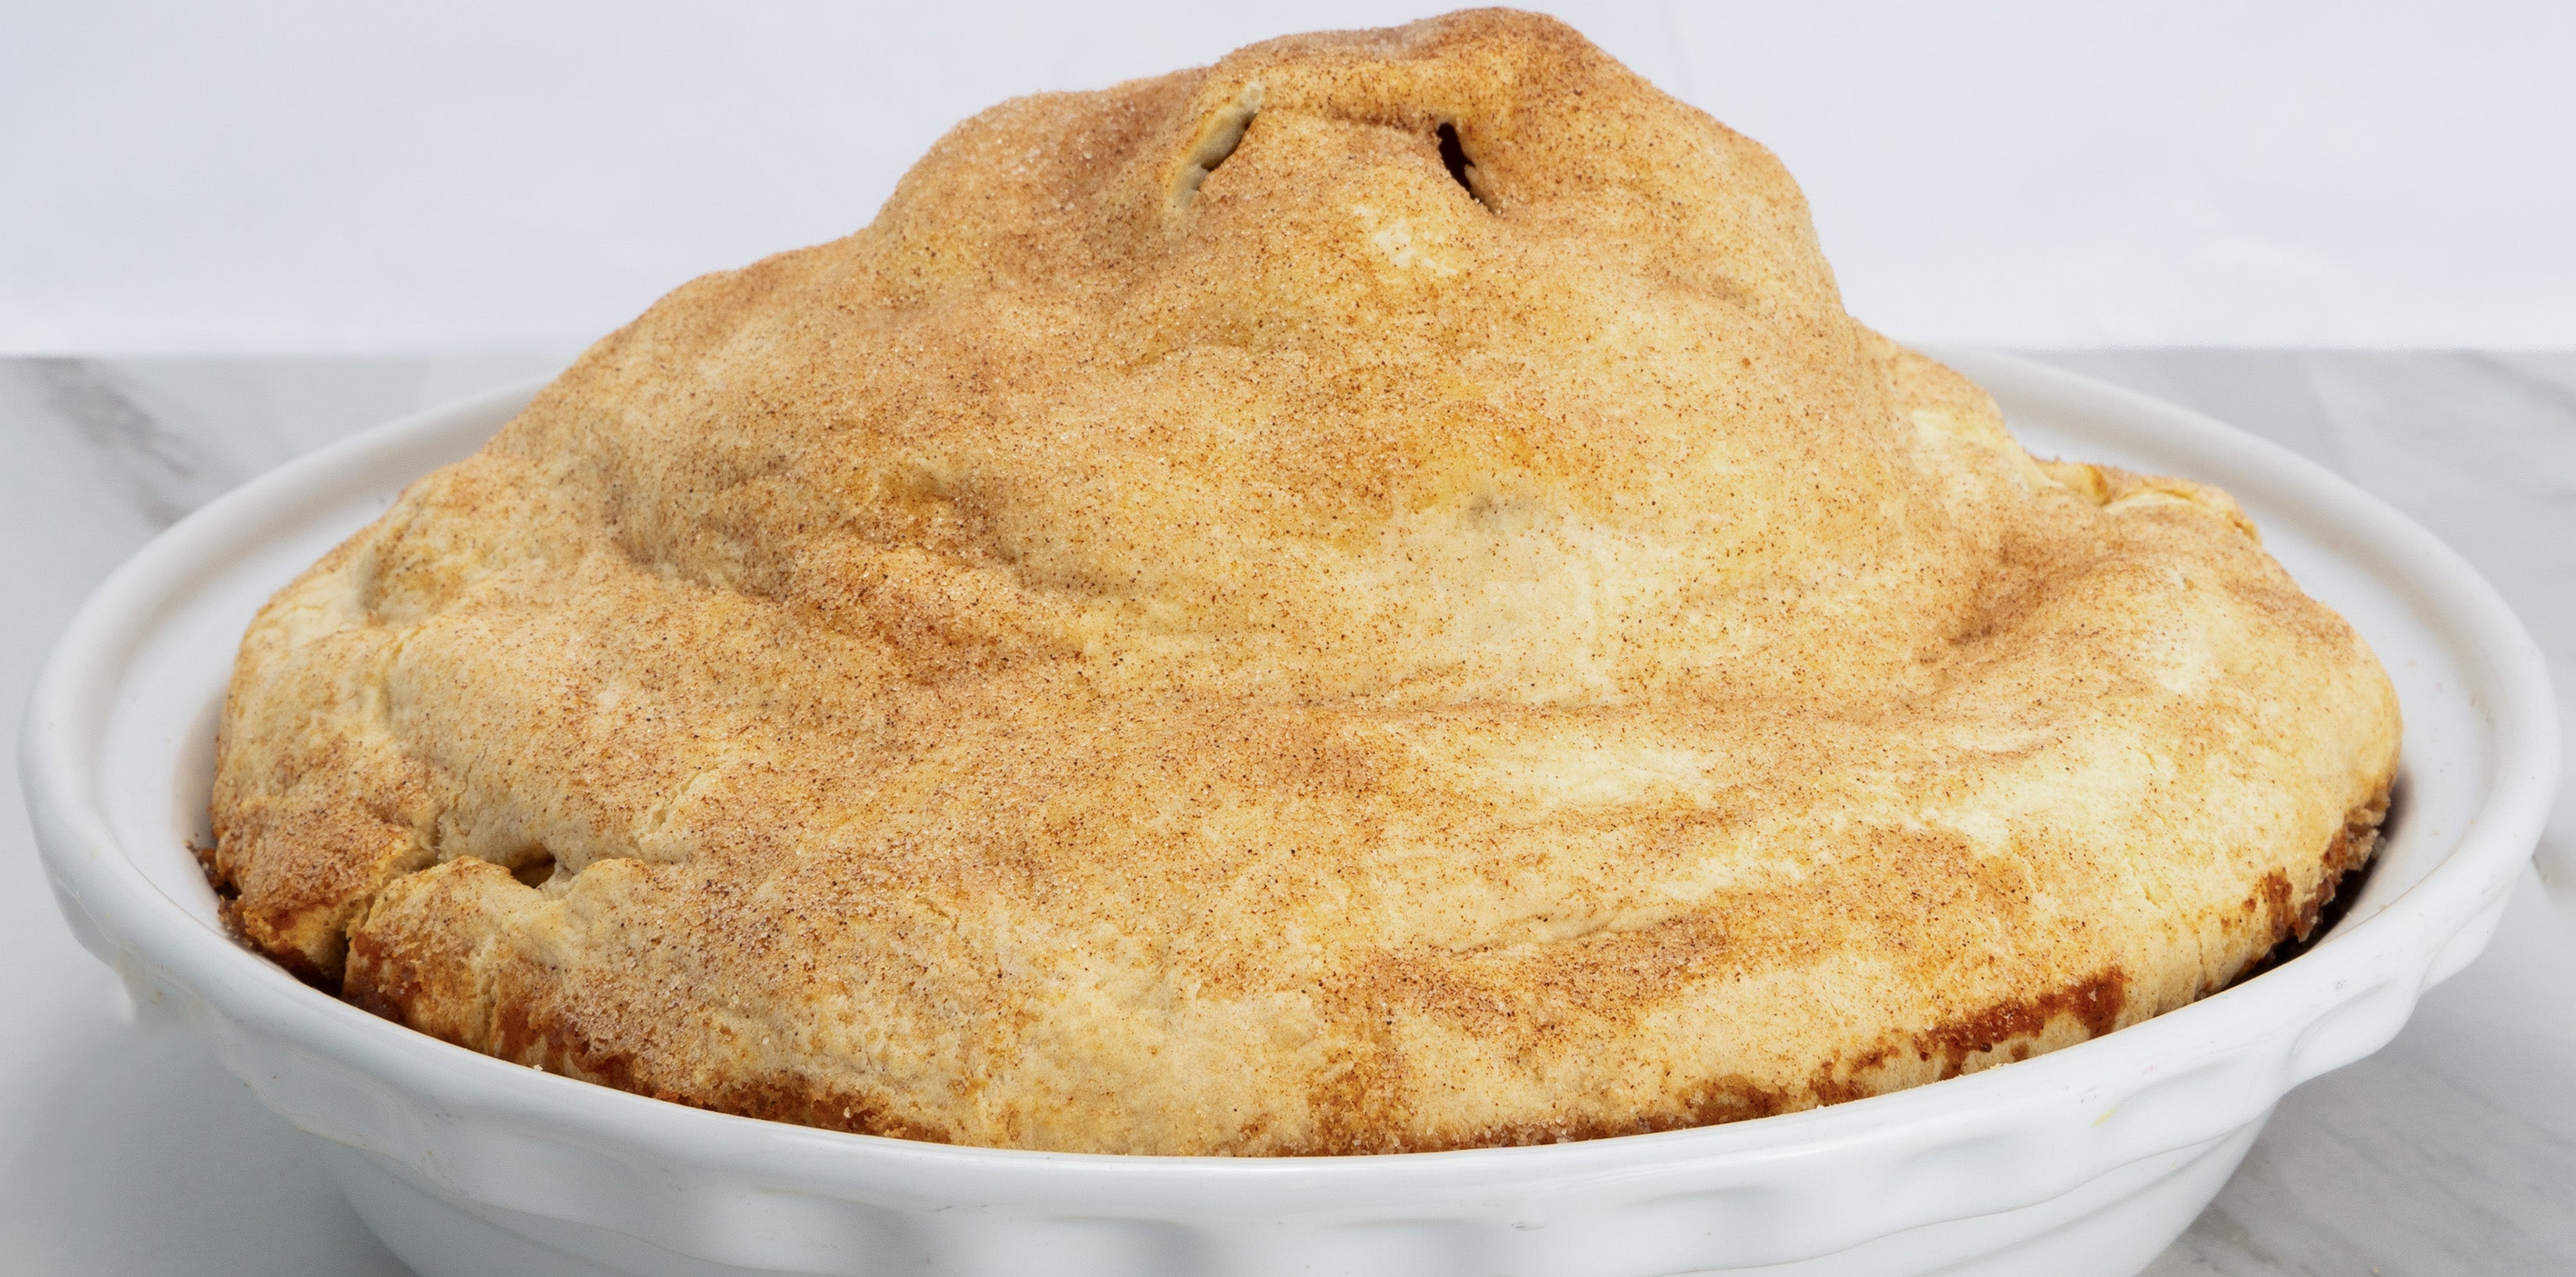 6 lb. Huge Apple Pie.